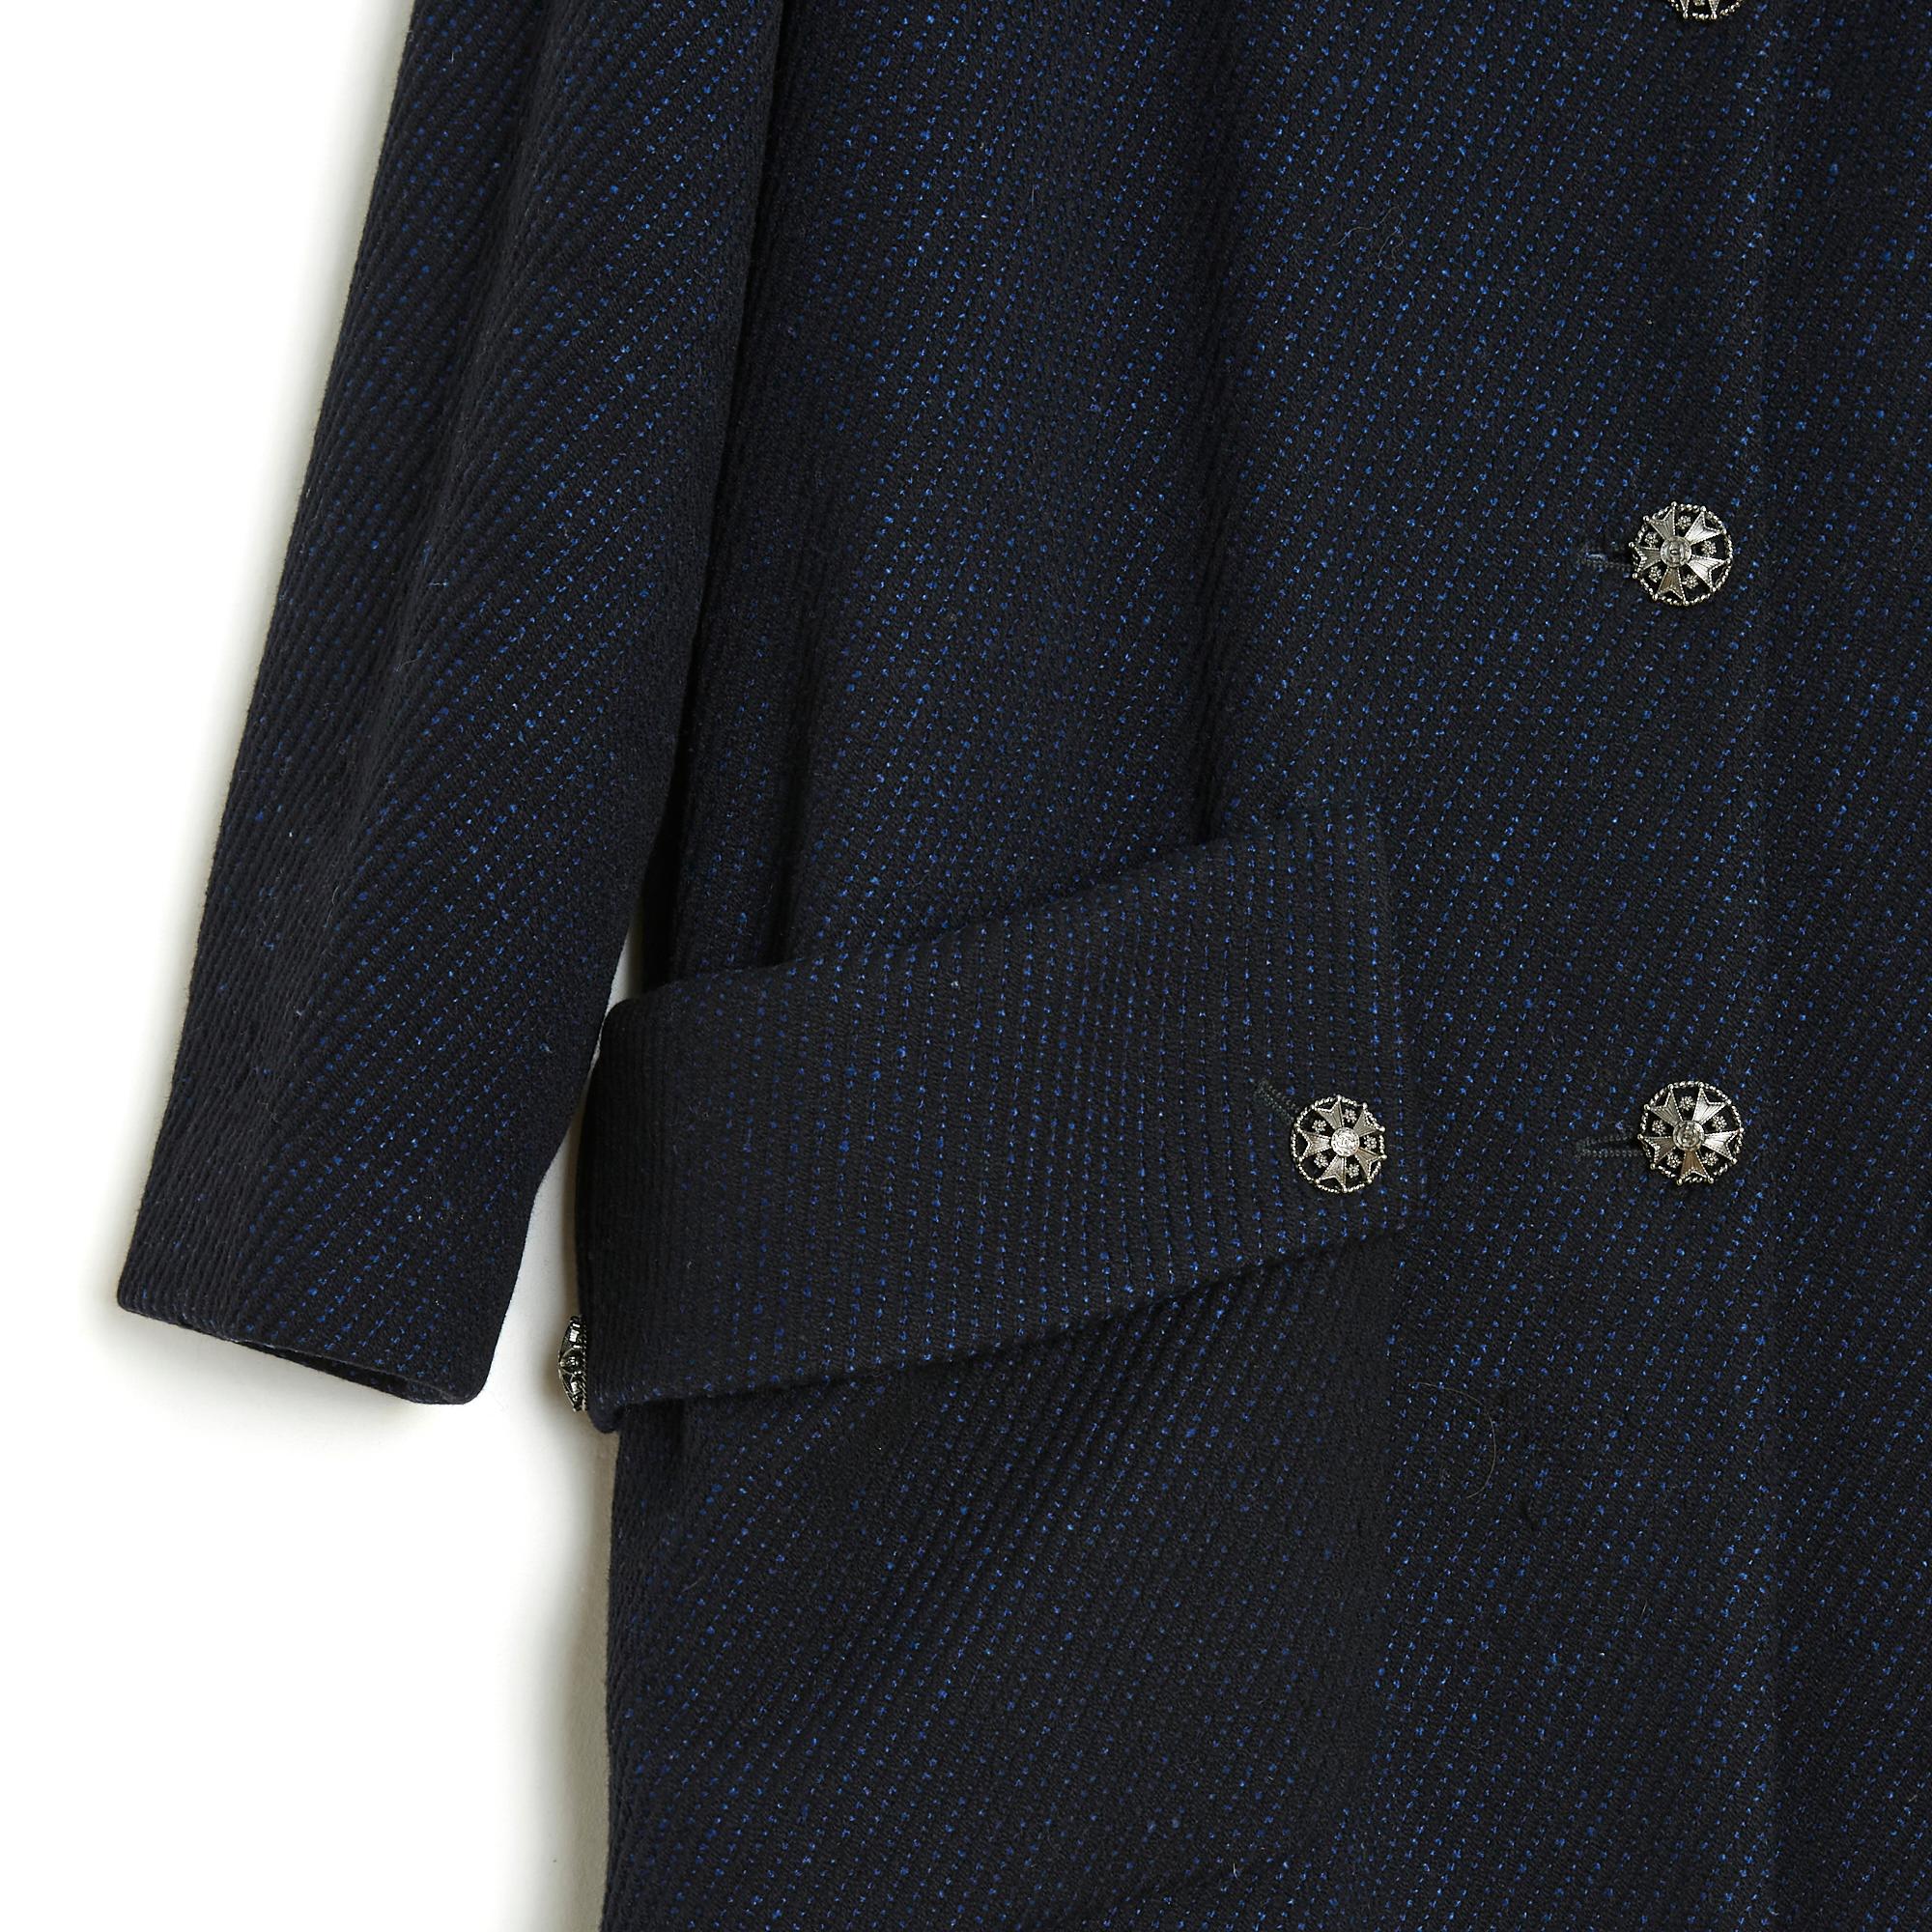 Manteau Chanel Pre Fall ou collection Métiers d'Art 2009 (Paris Moscou) mi-long en drap de laine épais et doux à motifs noirs et bleus (tissés), forme droite, légèrement oversize et évasée, col caban fermé par un crochet et 5 gros boutons bijou, 2